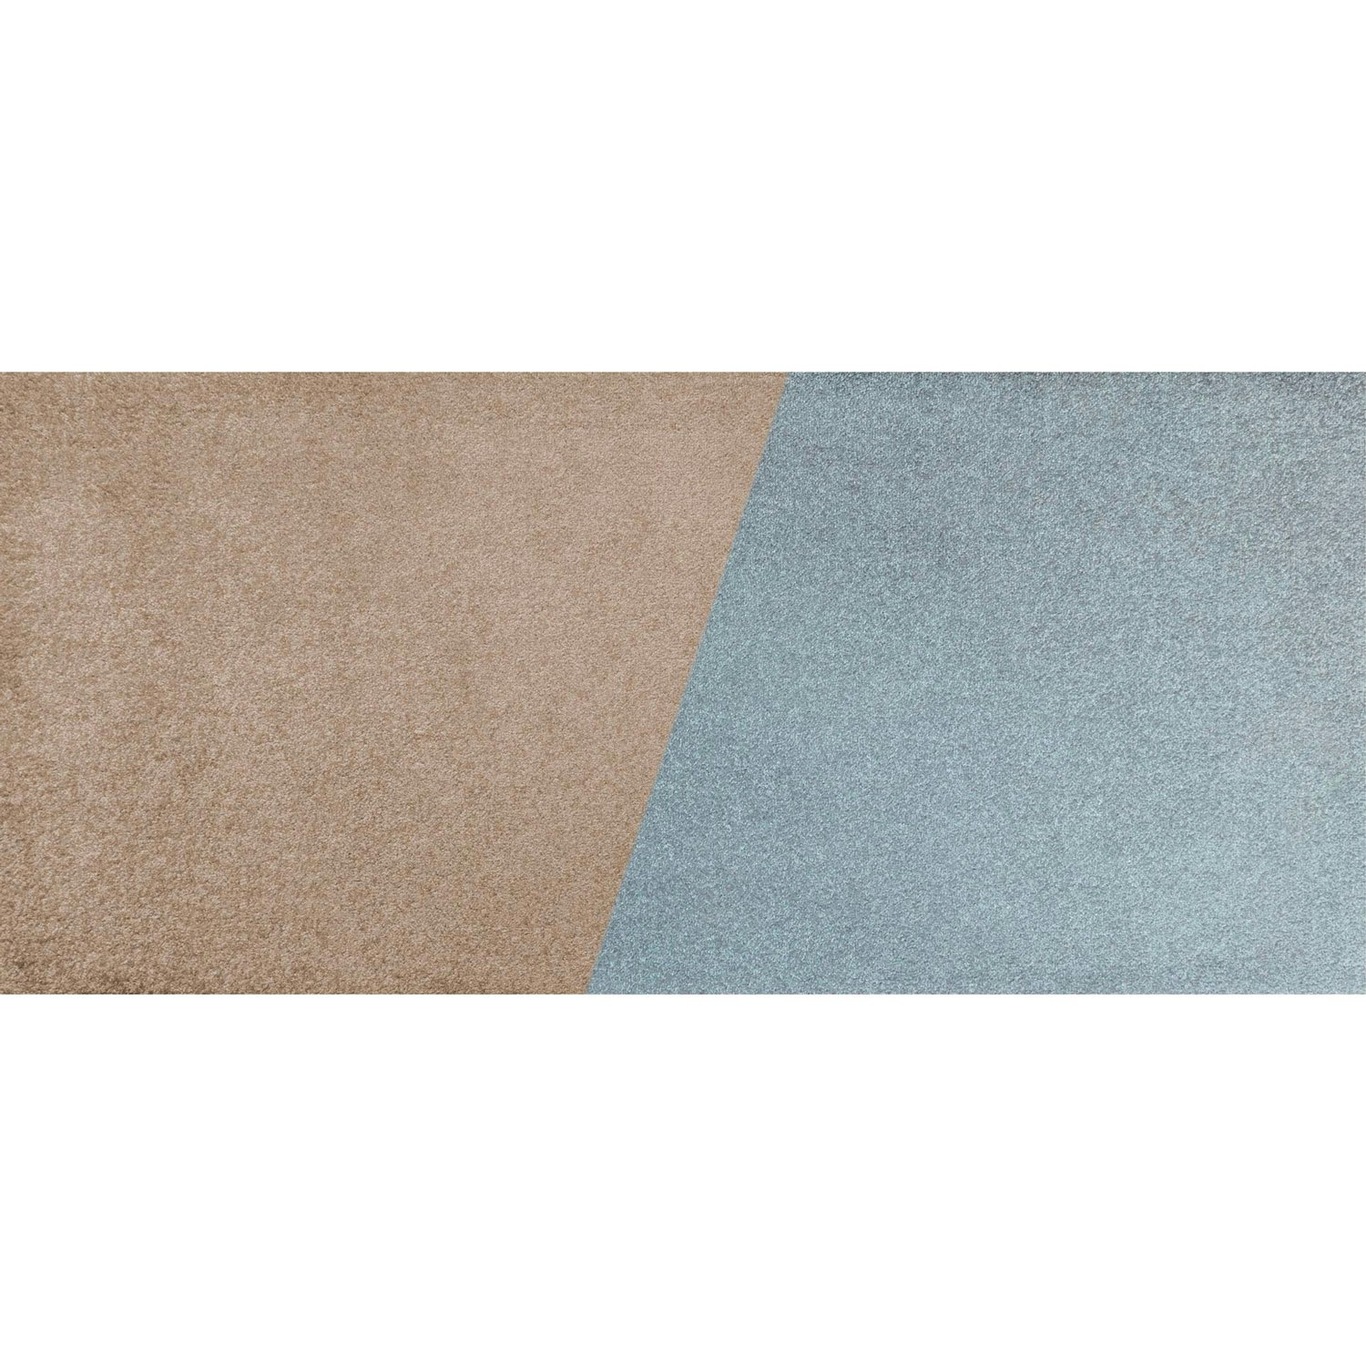 Duet Rug 70x150 cm, Slate Blue